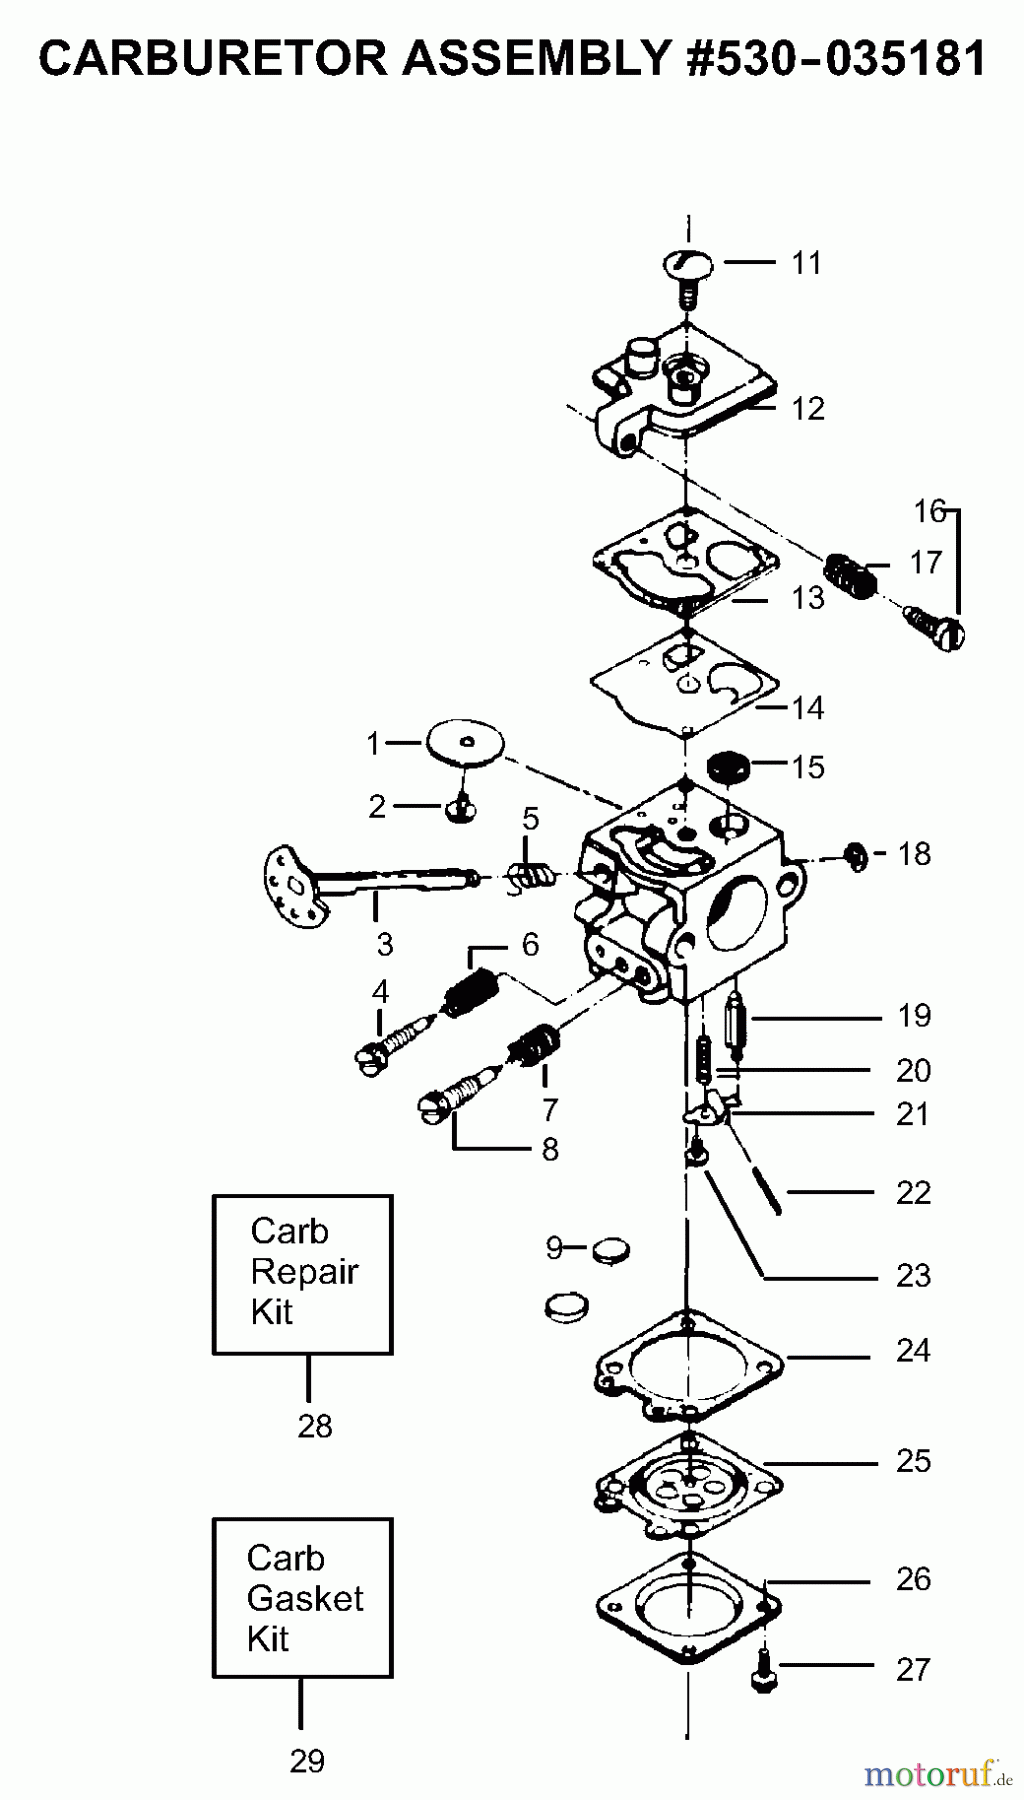  Poulan / Weed Eater Motorsägen PP235 - Poulan Pro Chainsaw Carburetor Assembly P/N 530035181